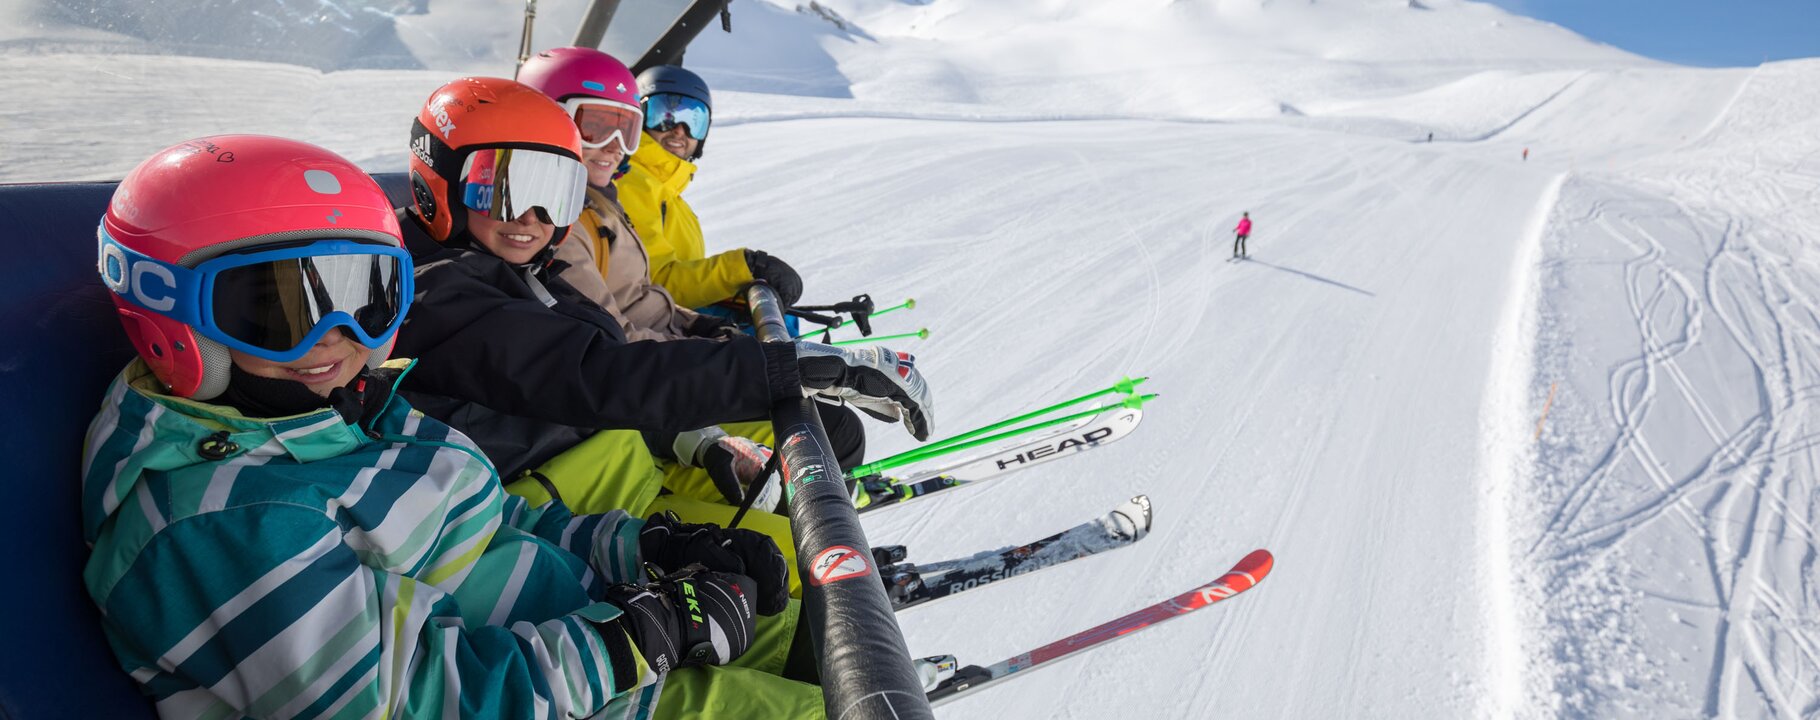 Skifahren mit der Familie im Skigebiet von Serfaus-Fiss-Ladis in Tirol Österreich | © Andreas Kirschner